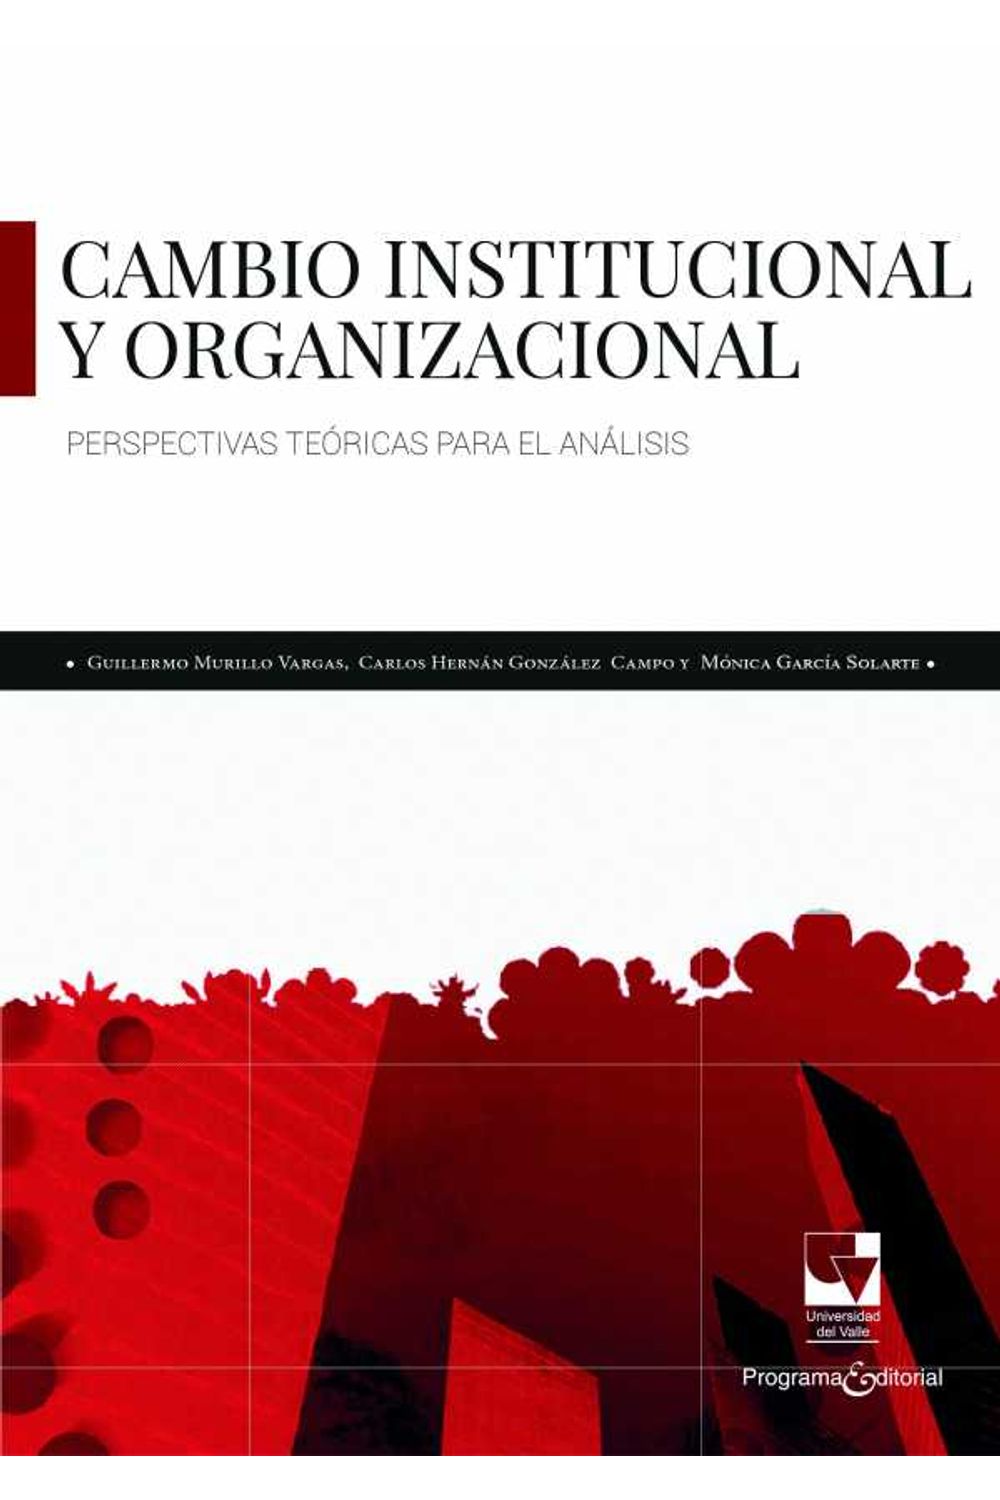 bw-cambio-institucional-y-organizacional-programa-editorial-universidad-del-valle-9789587654790